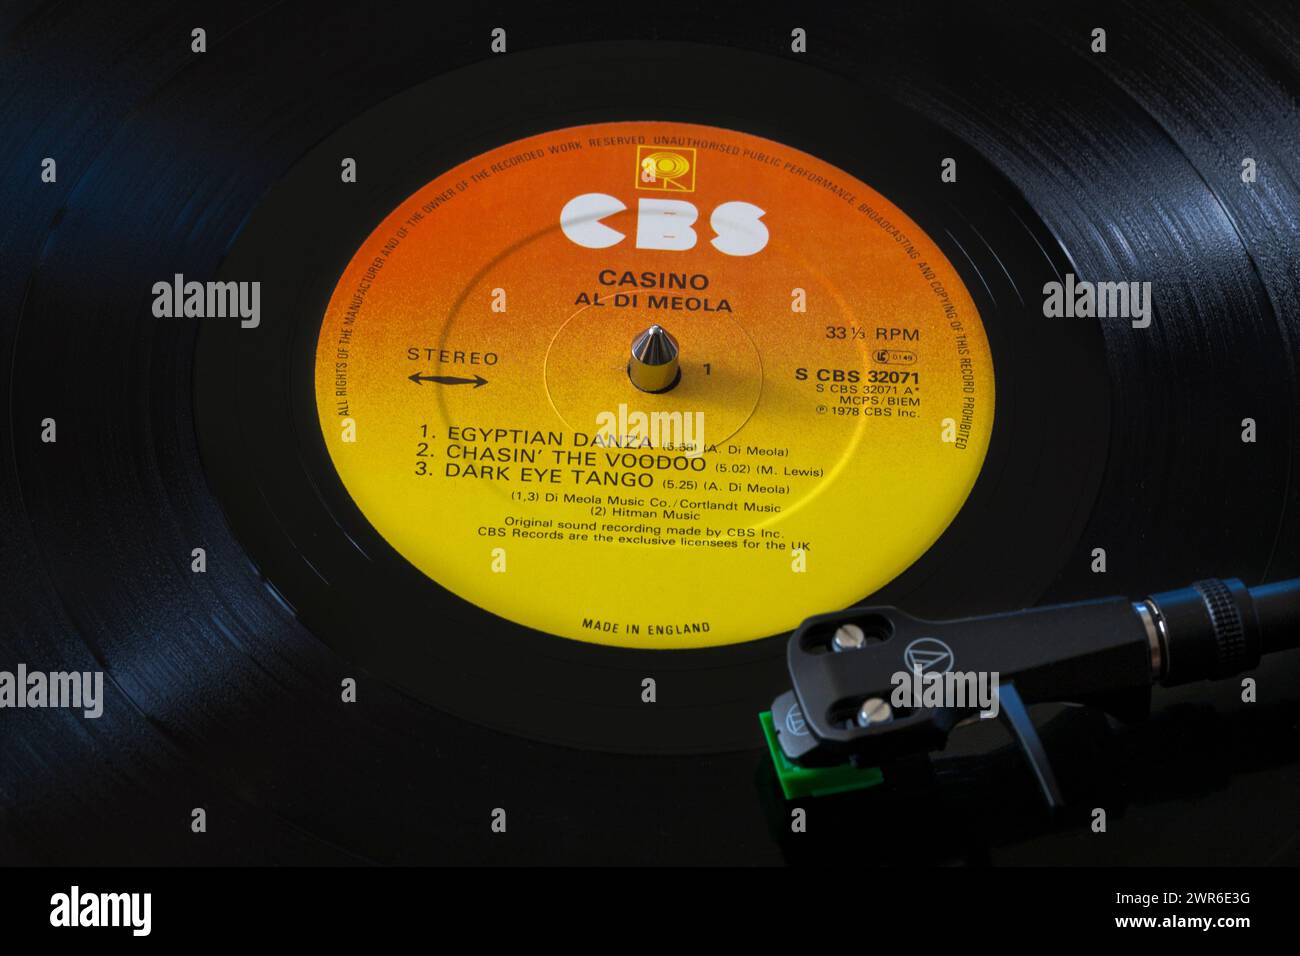 Al Di Meola Casino Vinyl-Album-LP mit Tonarm, Kartusche, Kopfschale und Stift auf Plattenspieler - 1978 Stockfoto